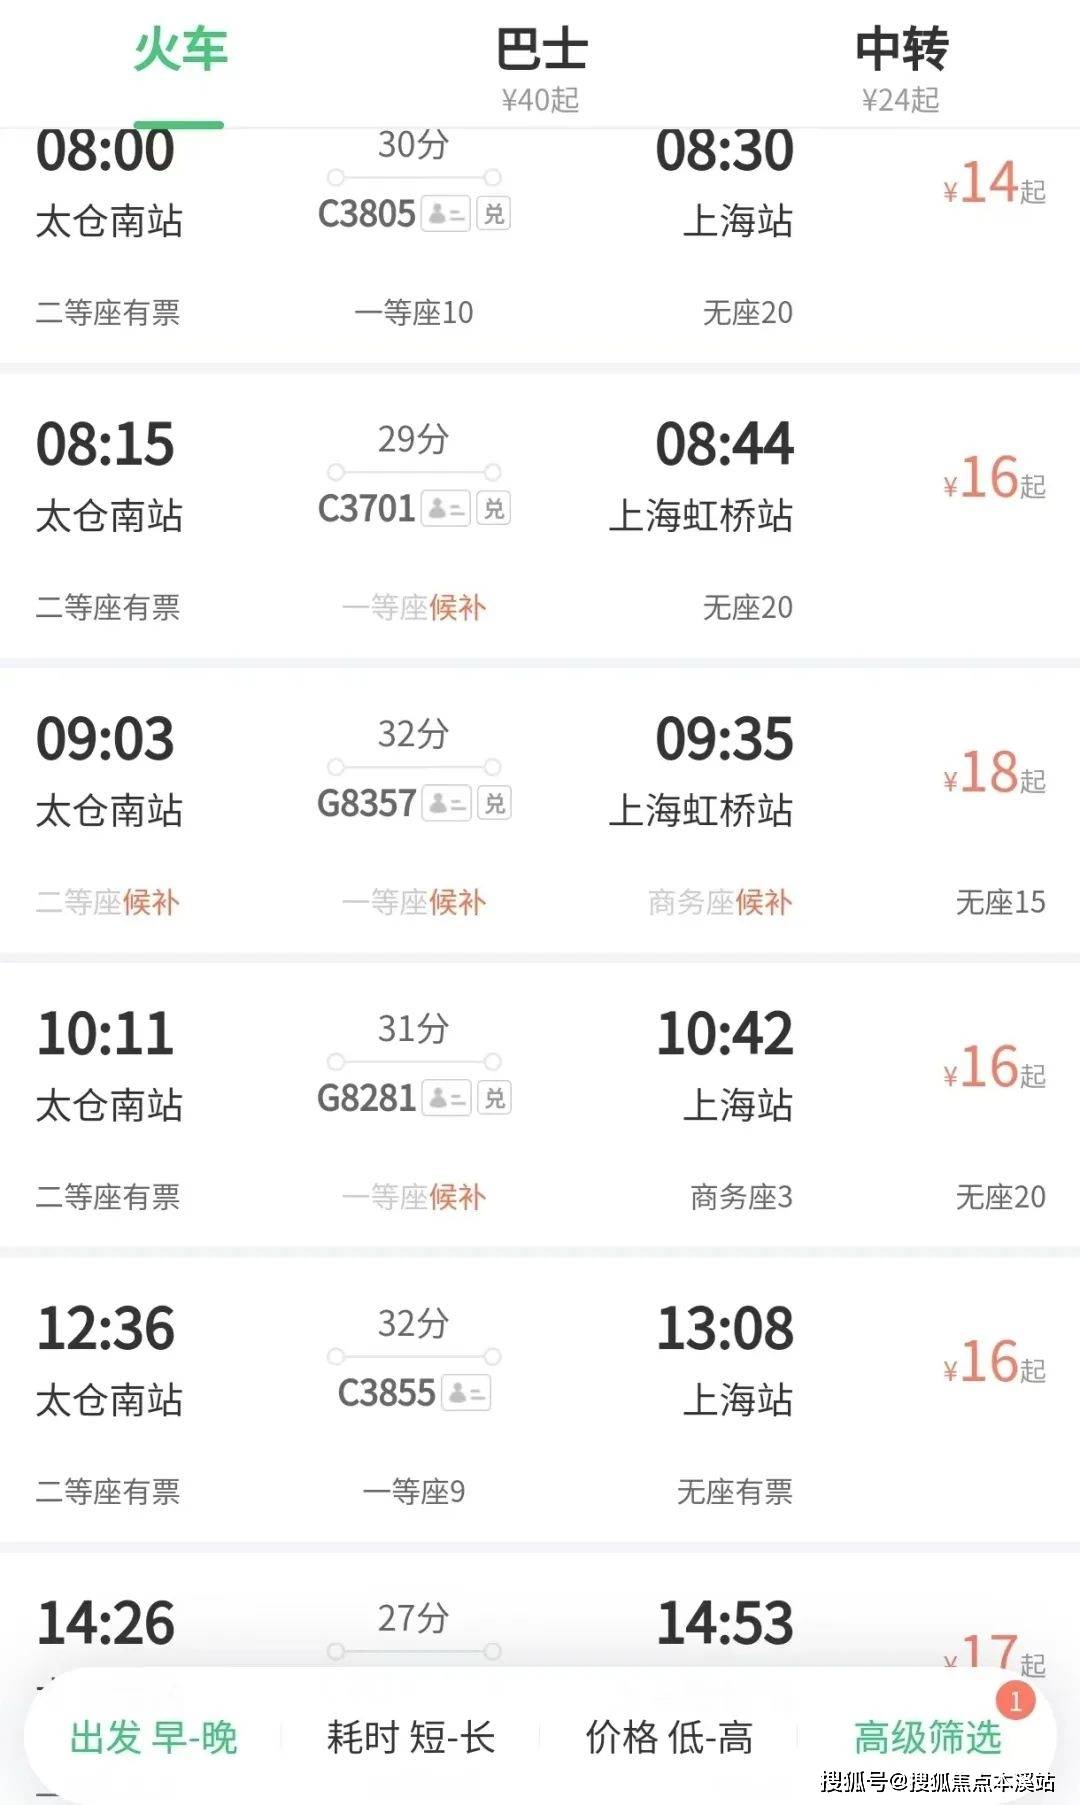 与上海站及虹桥枢纽全天有近10个班次往返,基本可以满足同城生活需求!